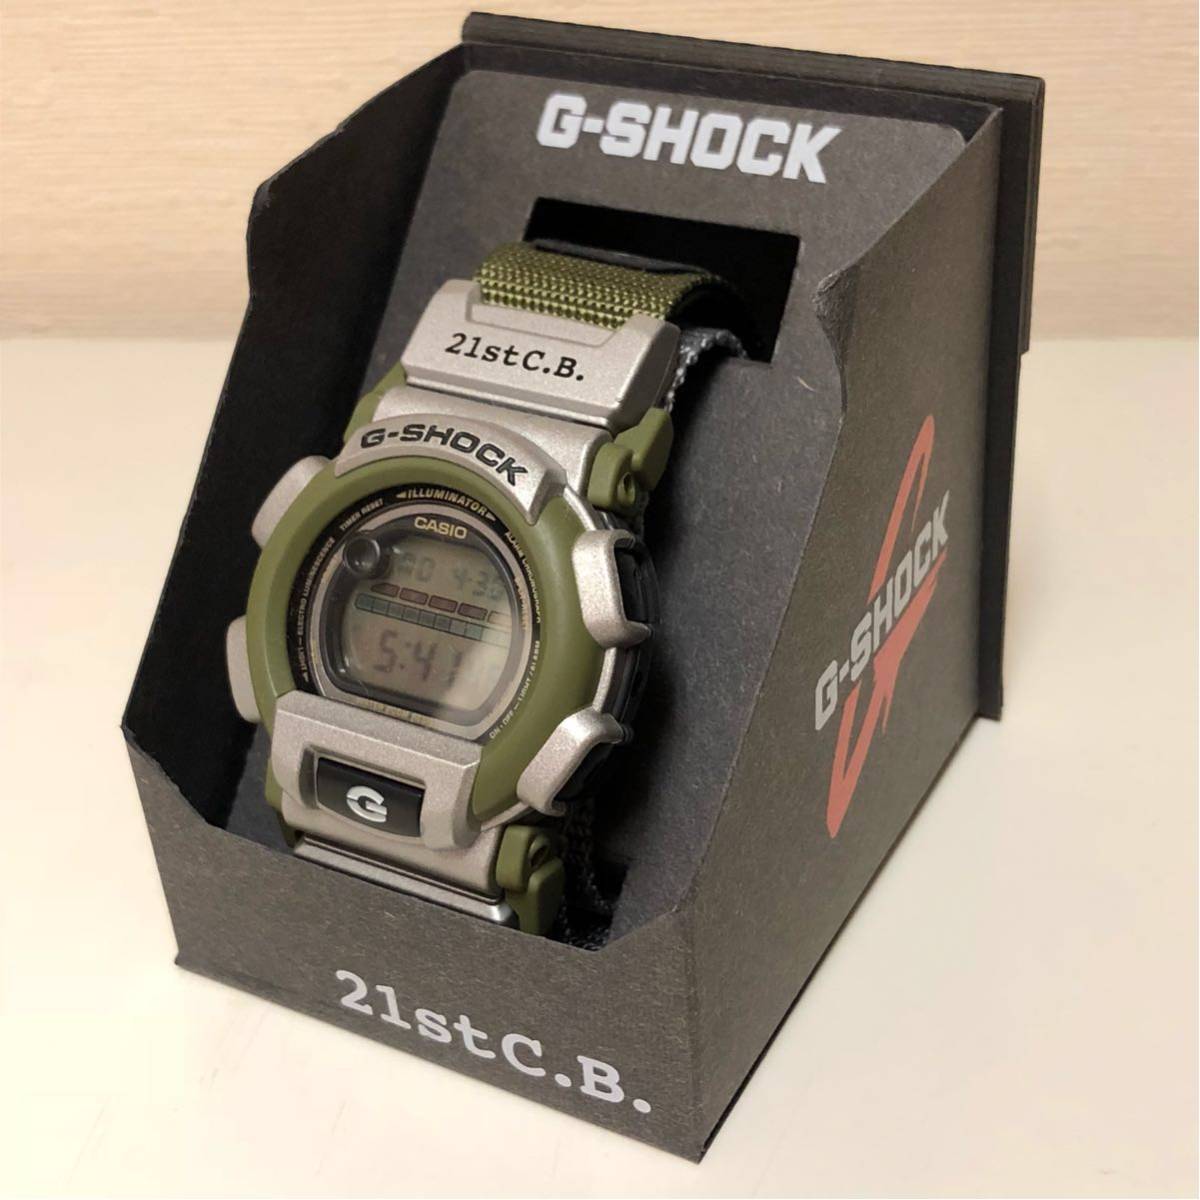 100％の保証 美品 電池式腕時計 CB-3Bvl Estevez Gio DW-003 21stC.B